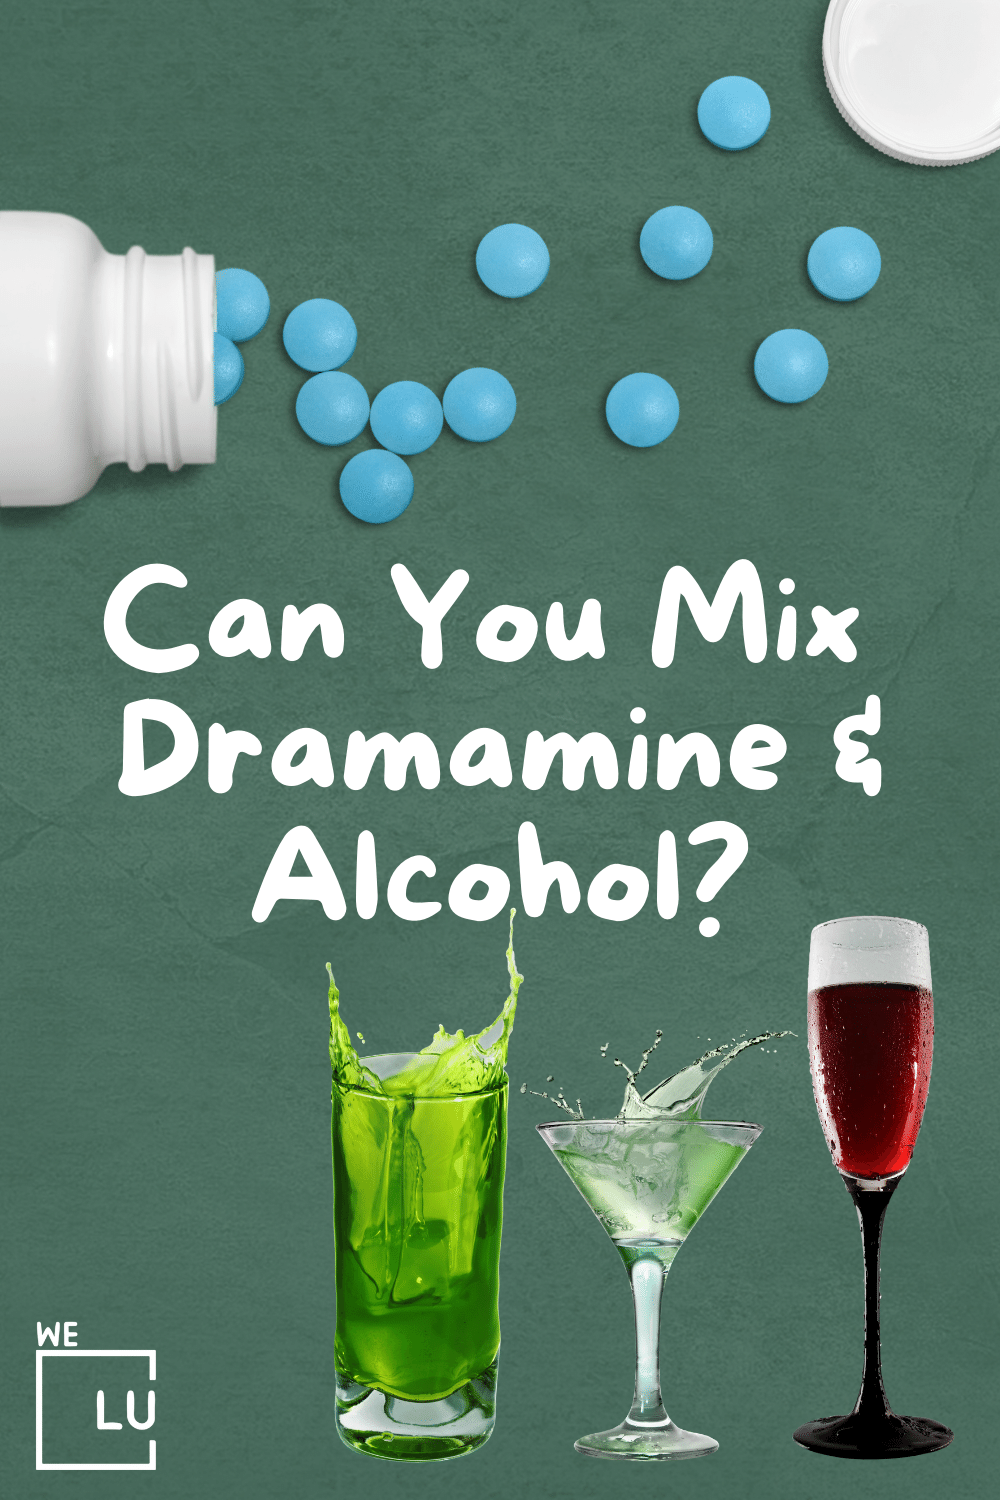 Can-You-Mix-Dramamin-Alcohol